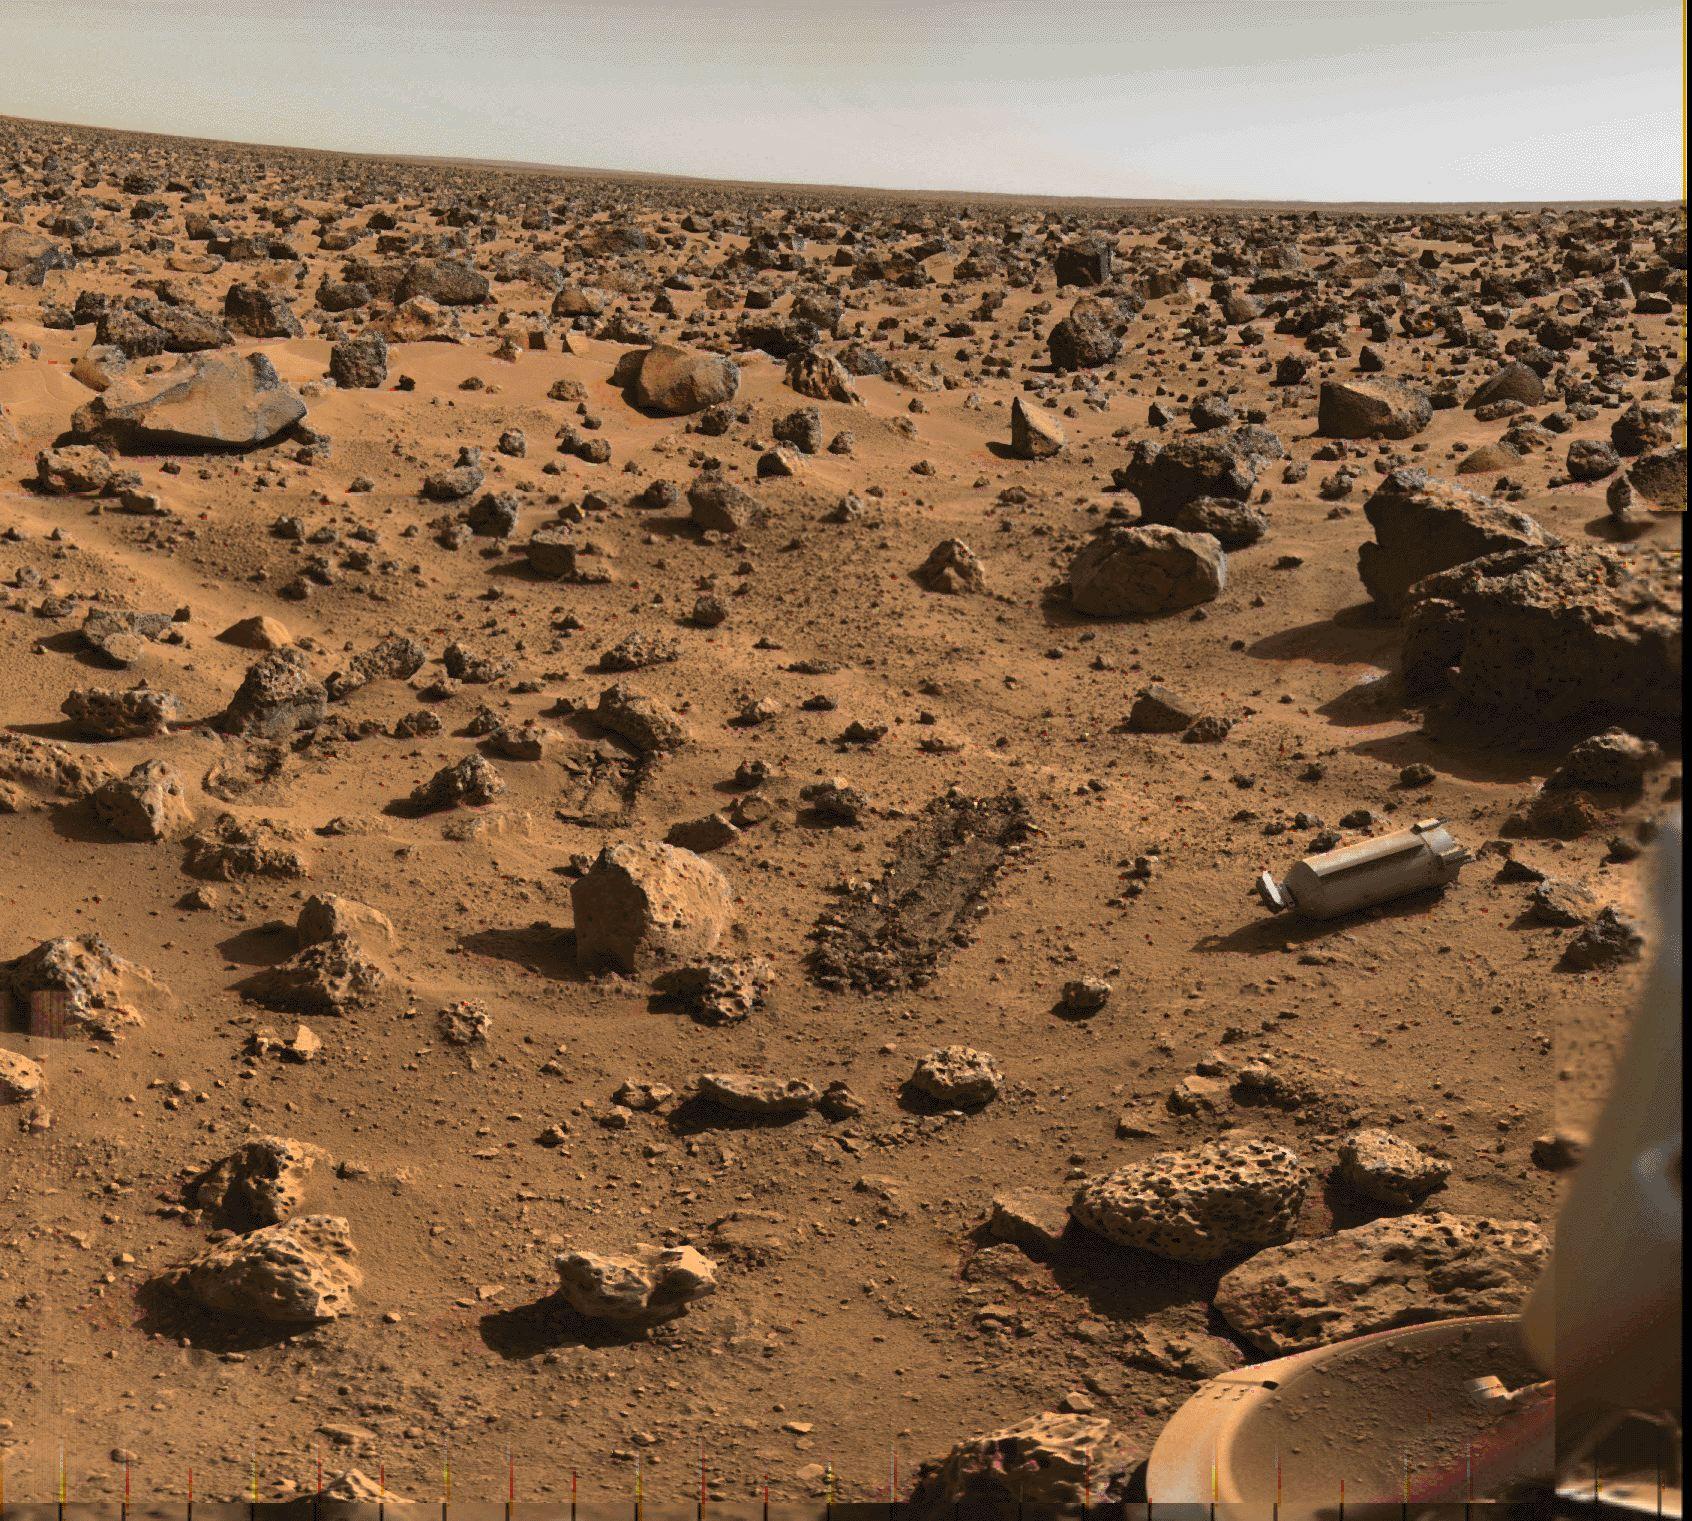 سطح المريخ في منطقة مليئة بالصخور والجلاميد التي تمتدّ للأفق. يظهر في وسط الصورة خندقان صغيران، وعلى اليمين الغطاء الواقي المقذوف من مركبة ڤايكينگ، إضافة إلى أحد مساند أقدام الهابط المغطىّ بالغبار في أسفل يمين الصورة.